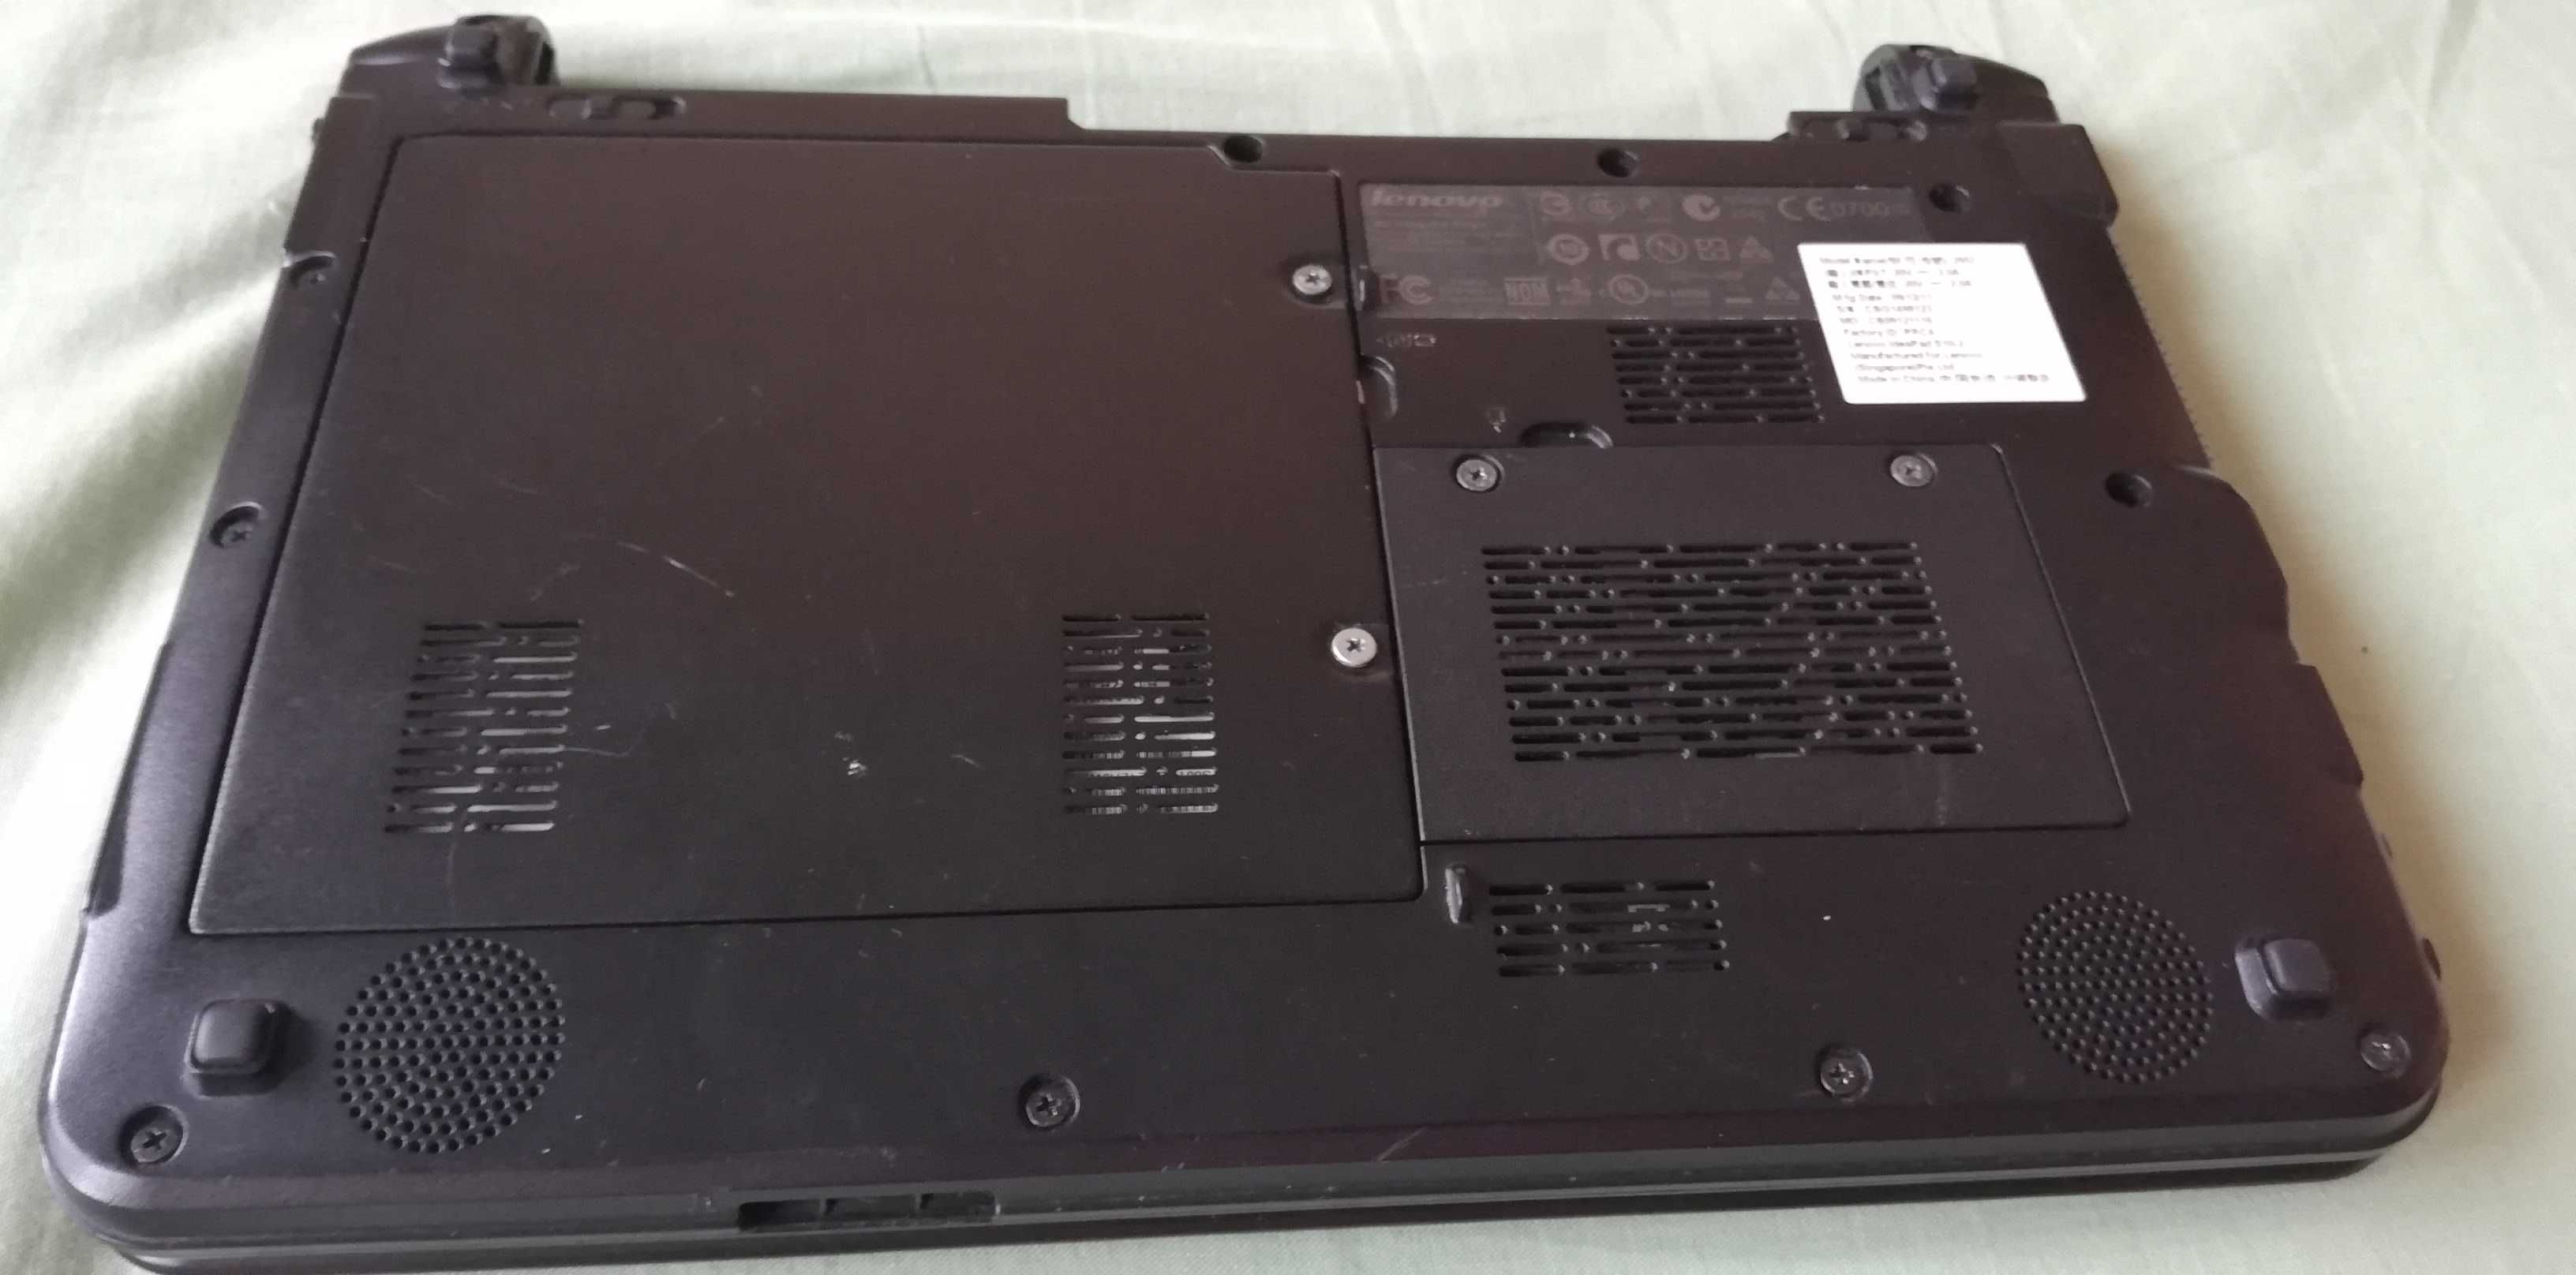 mini laptop Lenovo S10-2 cu procesor Intel® modem 3g sim card